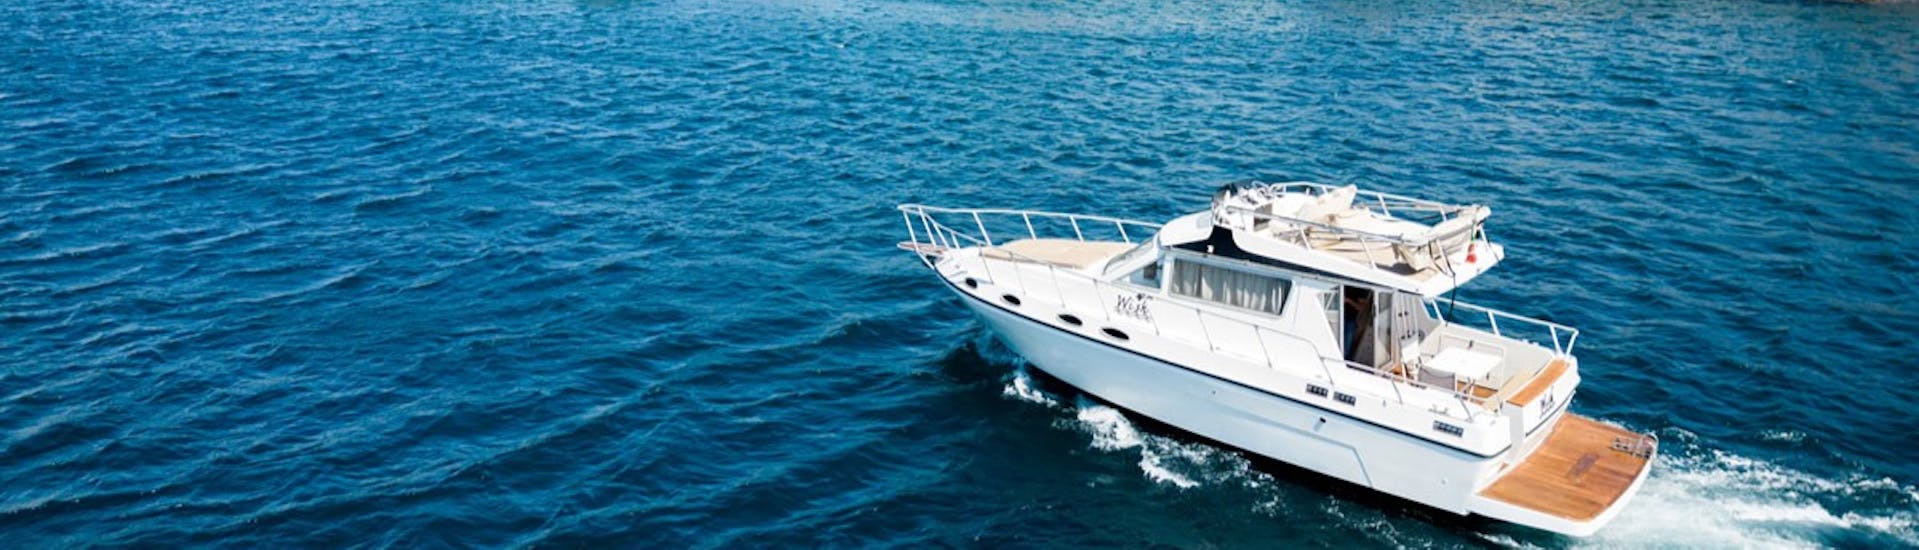 De Wish boot tijdens de Privéboottocht van Catania naar Taormina en Isola Bella met aperitief met Wish Boat Rent Catania.